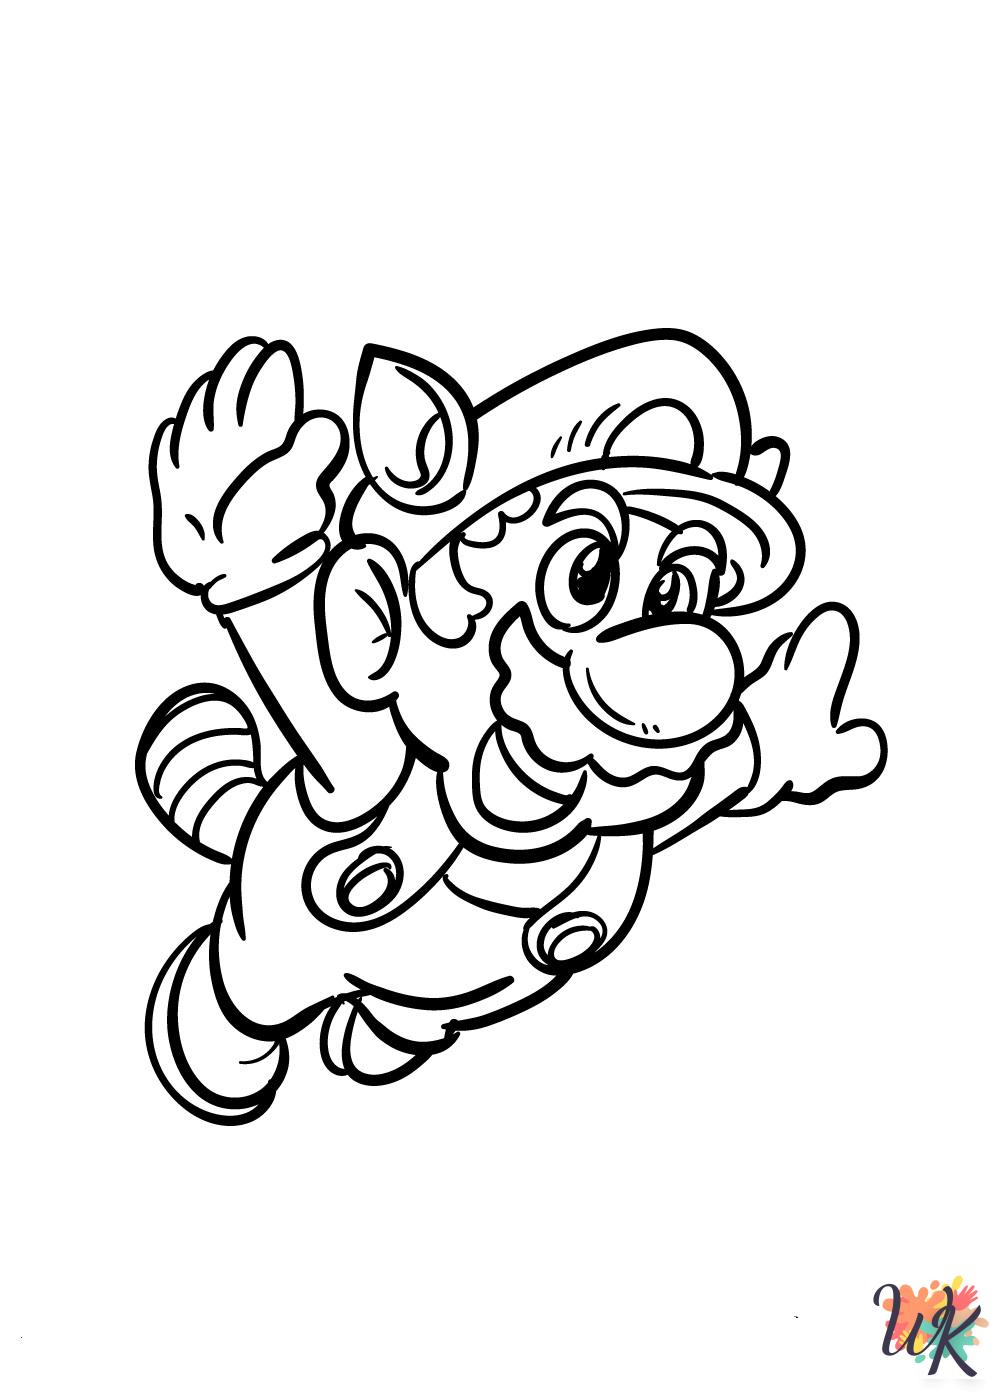 Super Mario Bros coloring book pages